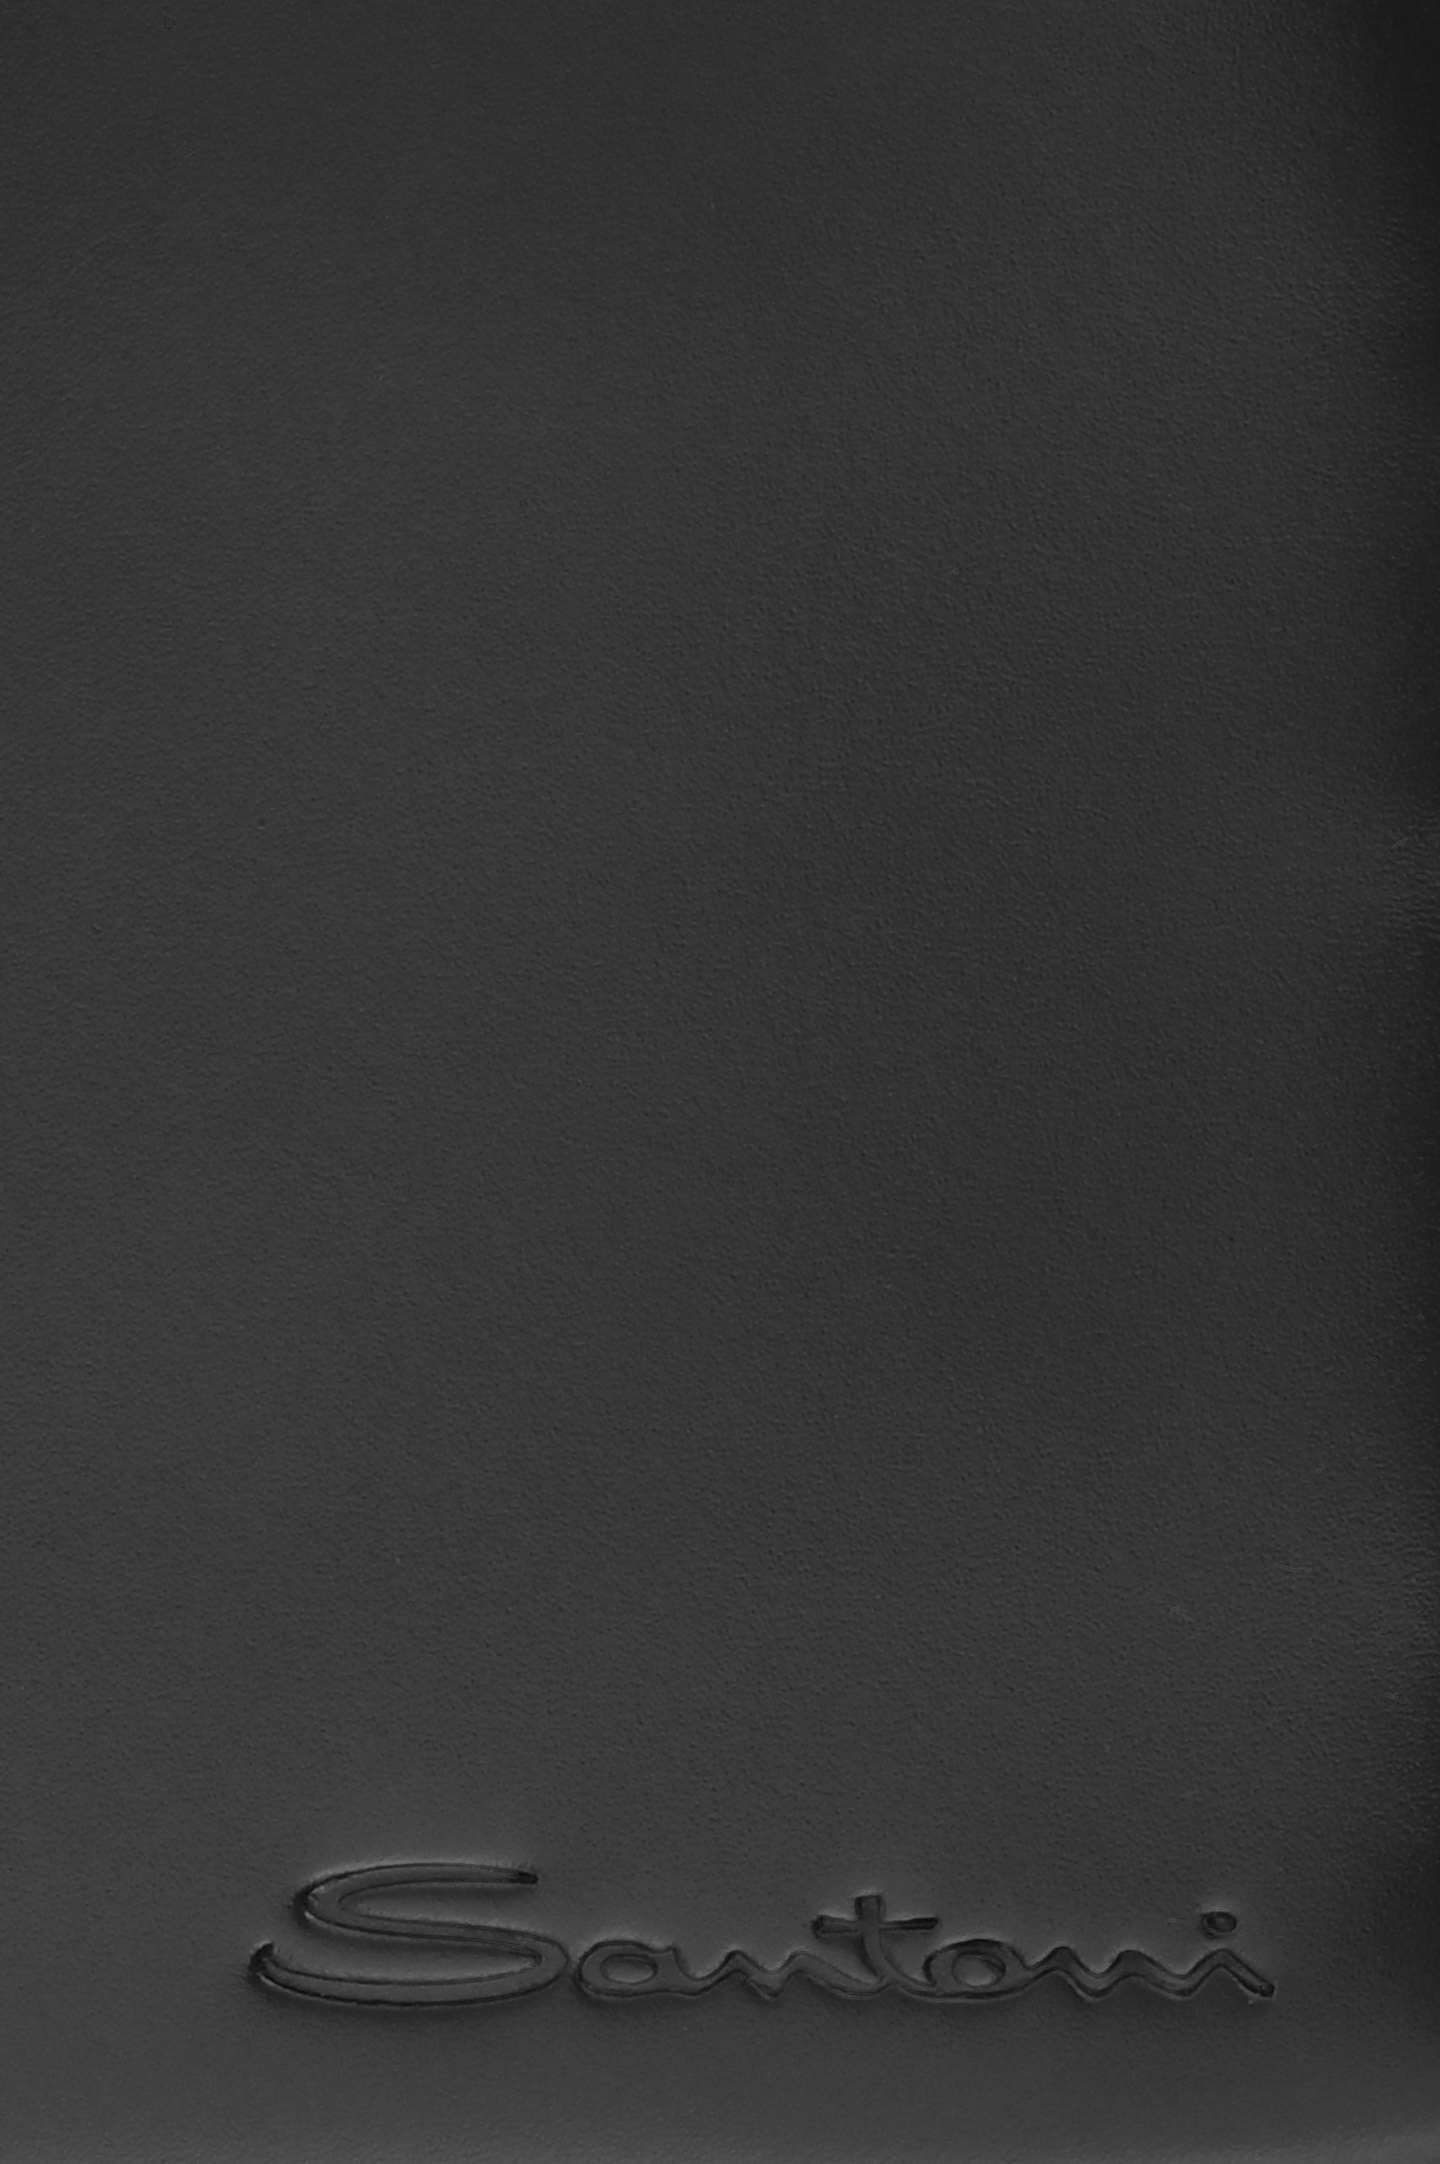 Кошелек SANTONI UFPPA2122FO-GRTO, цвет: Черный, Мужской